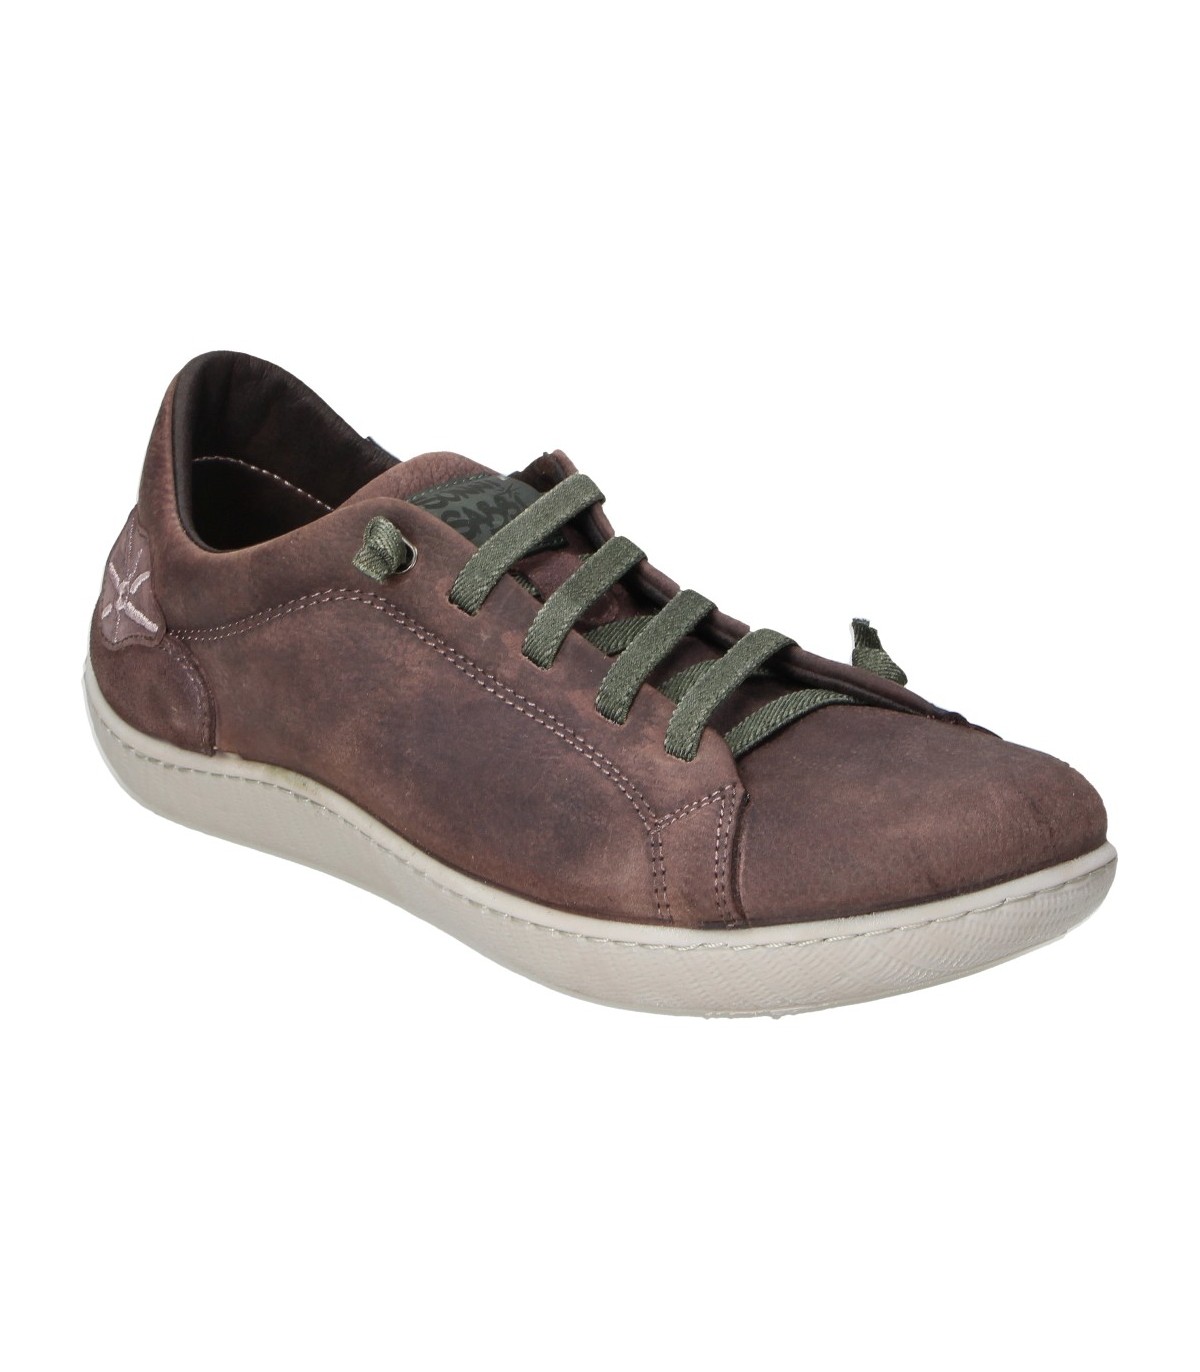 SUNNI SABBI ® Takao marrón ✓ Zapatillas deportivas piel hombre